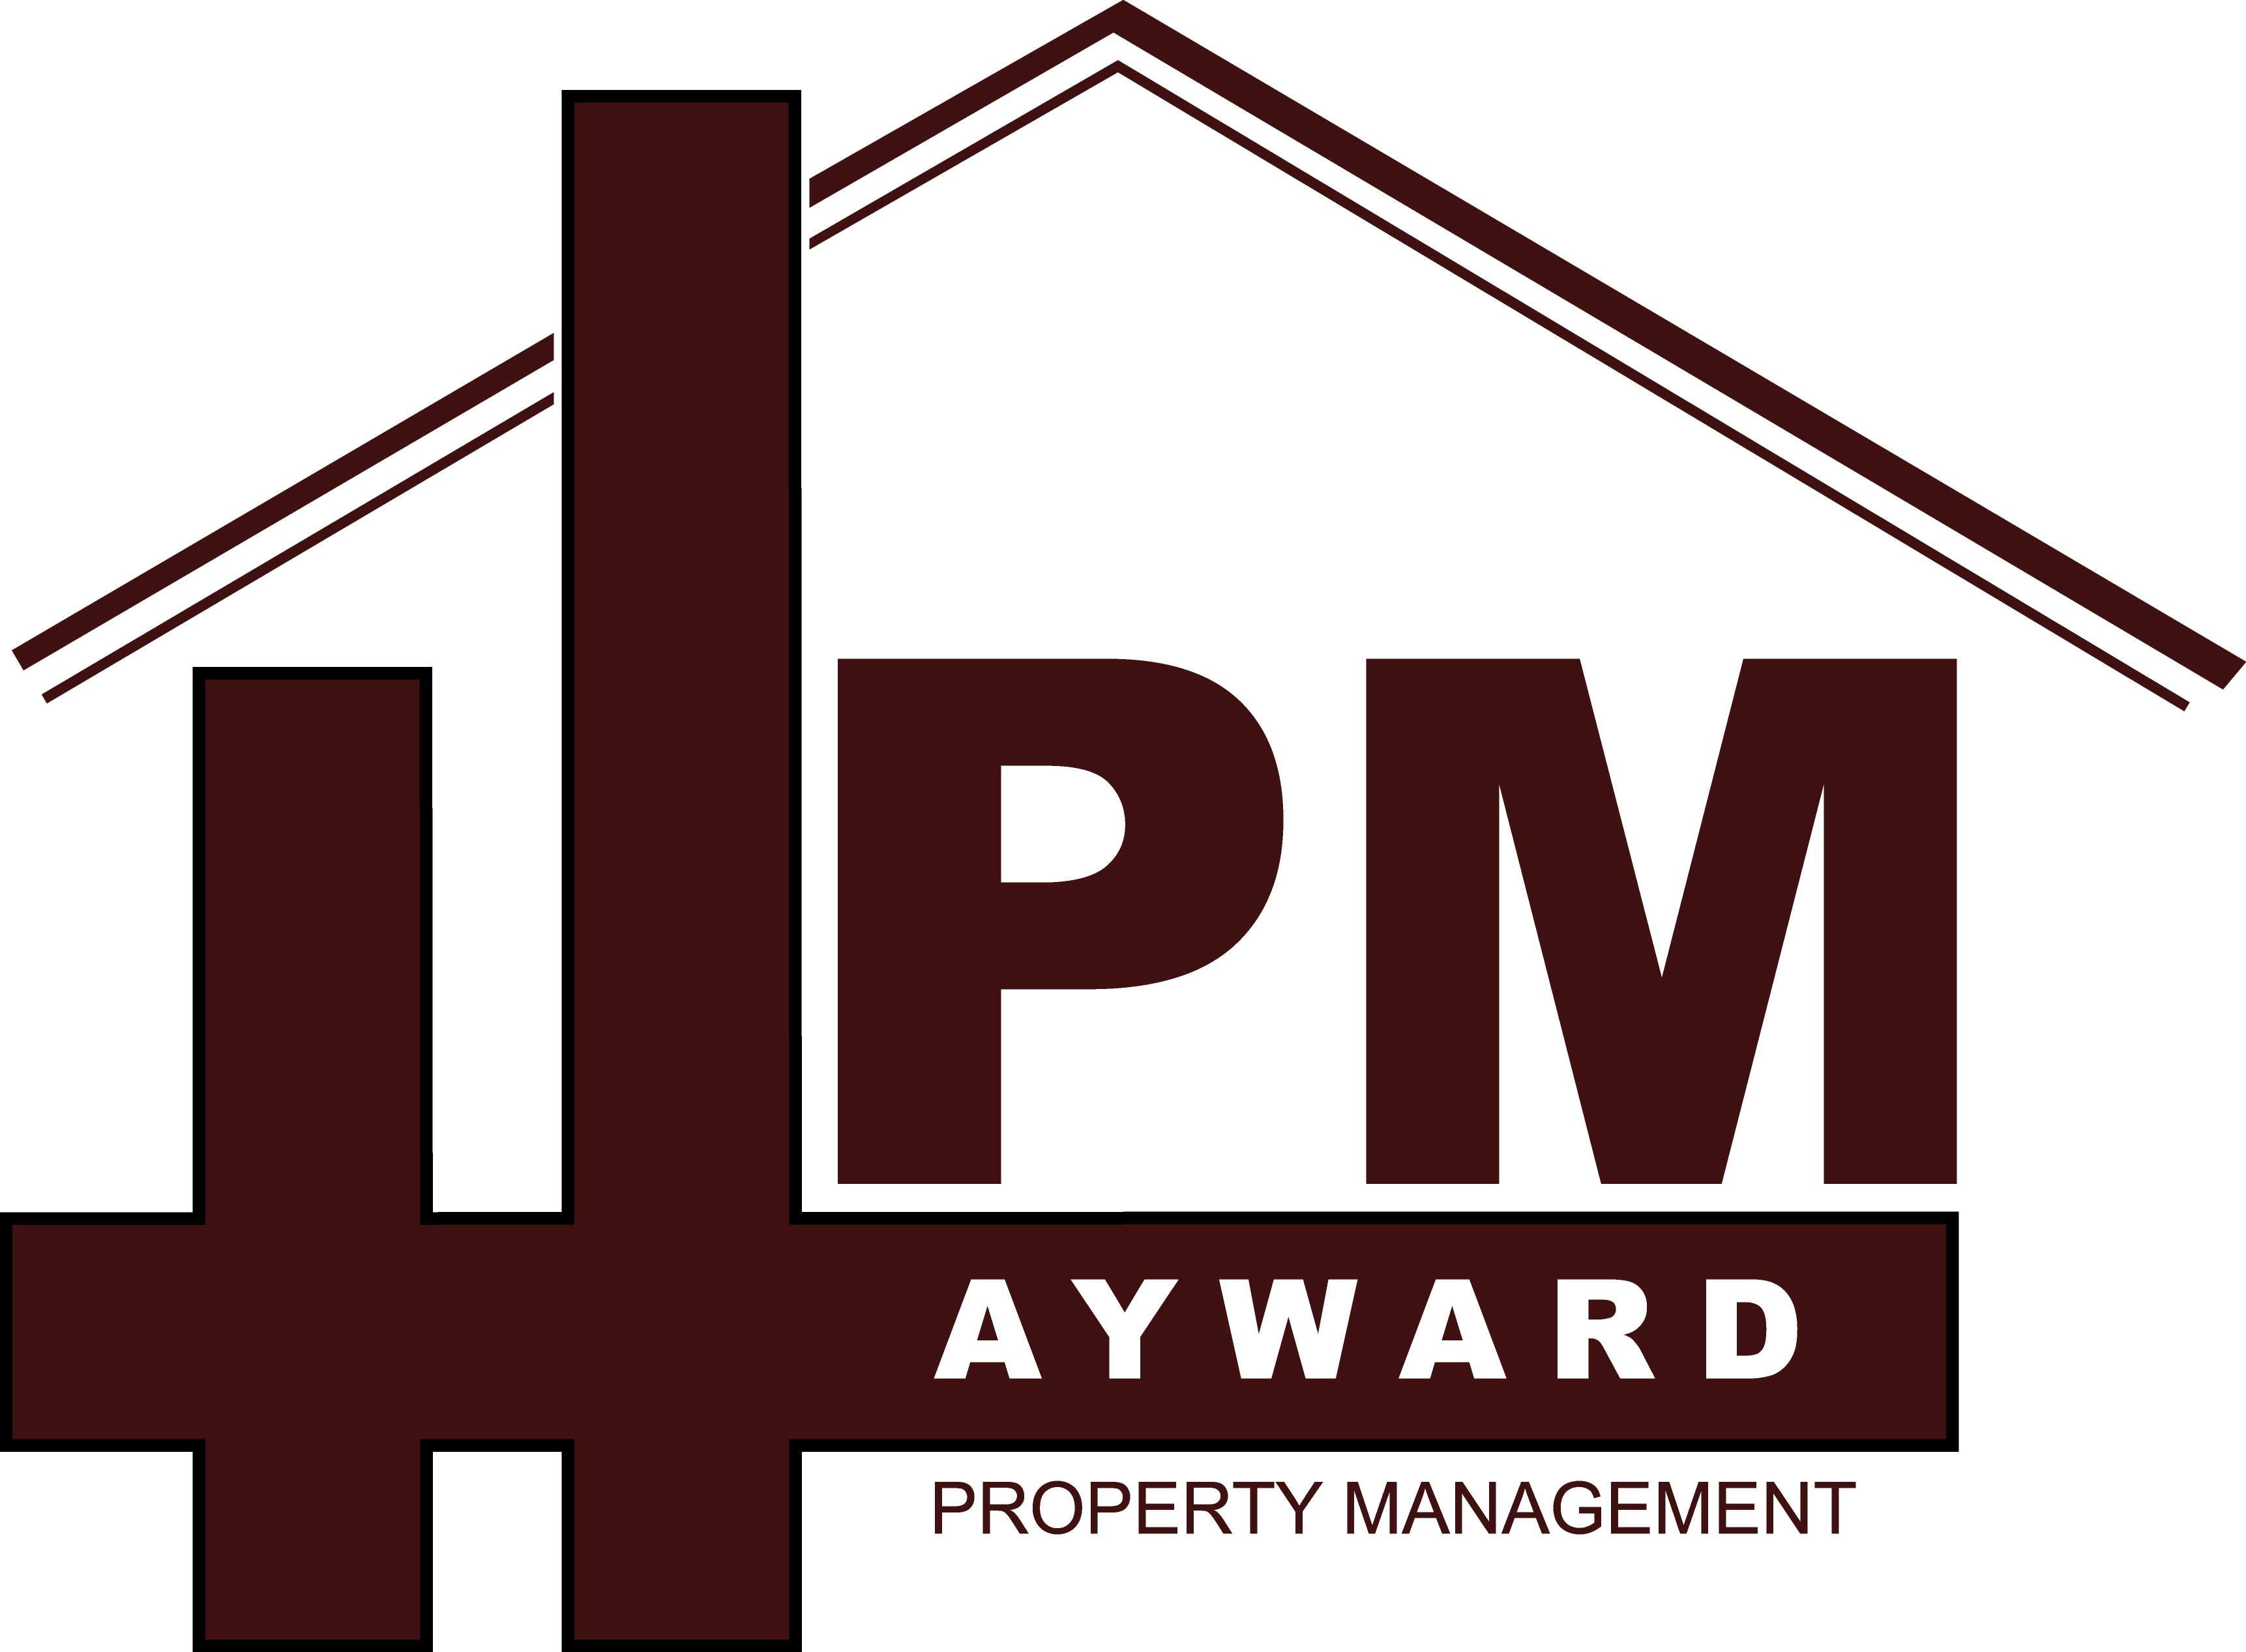 Hayward Property Management Inc. logo